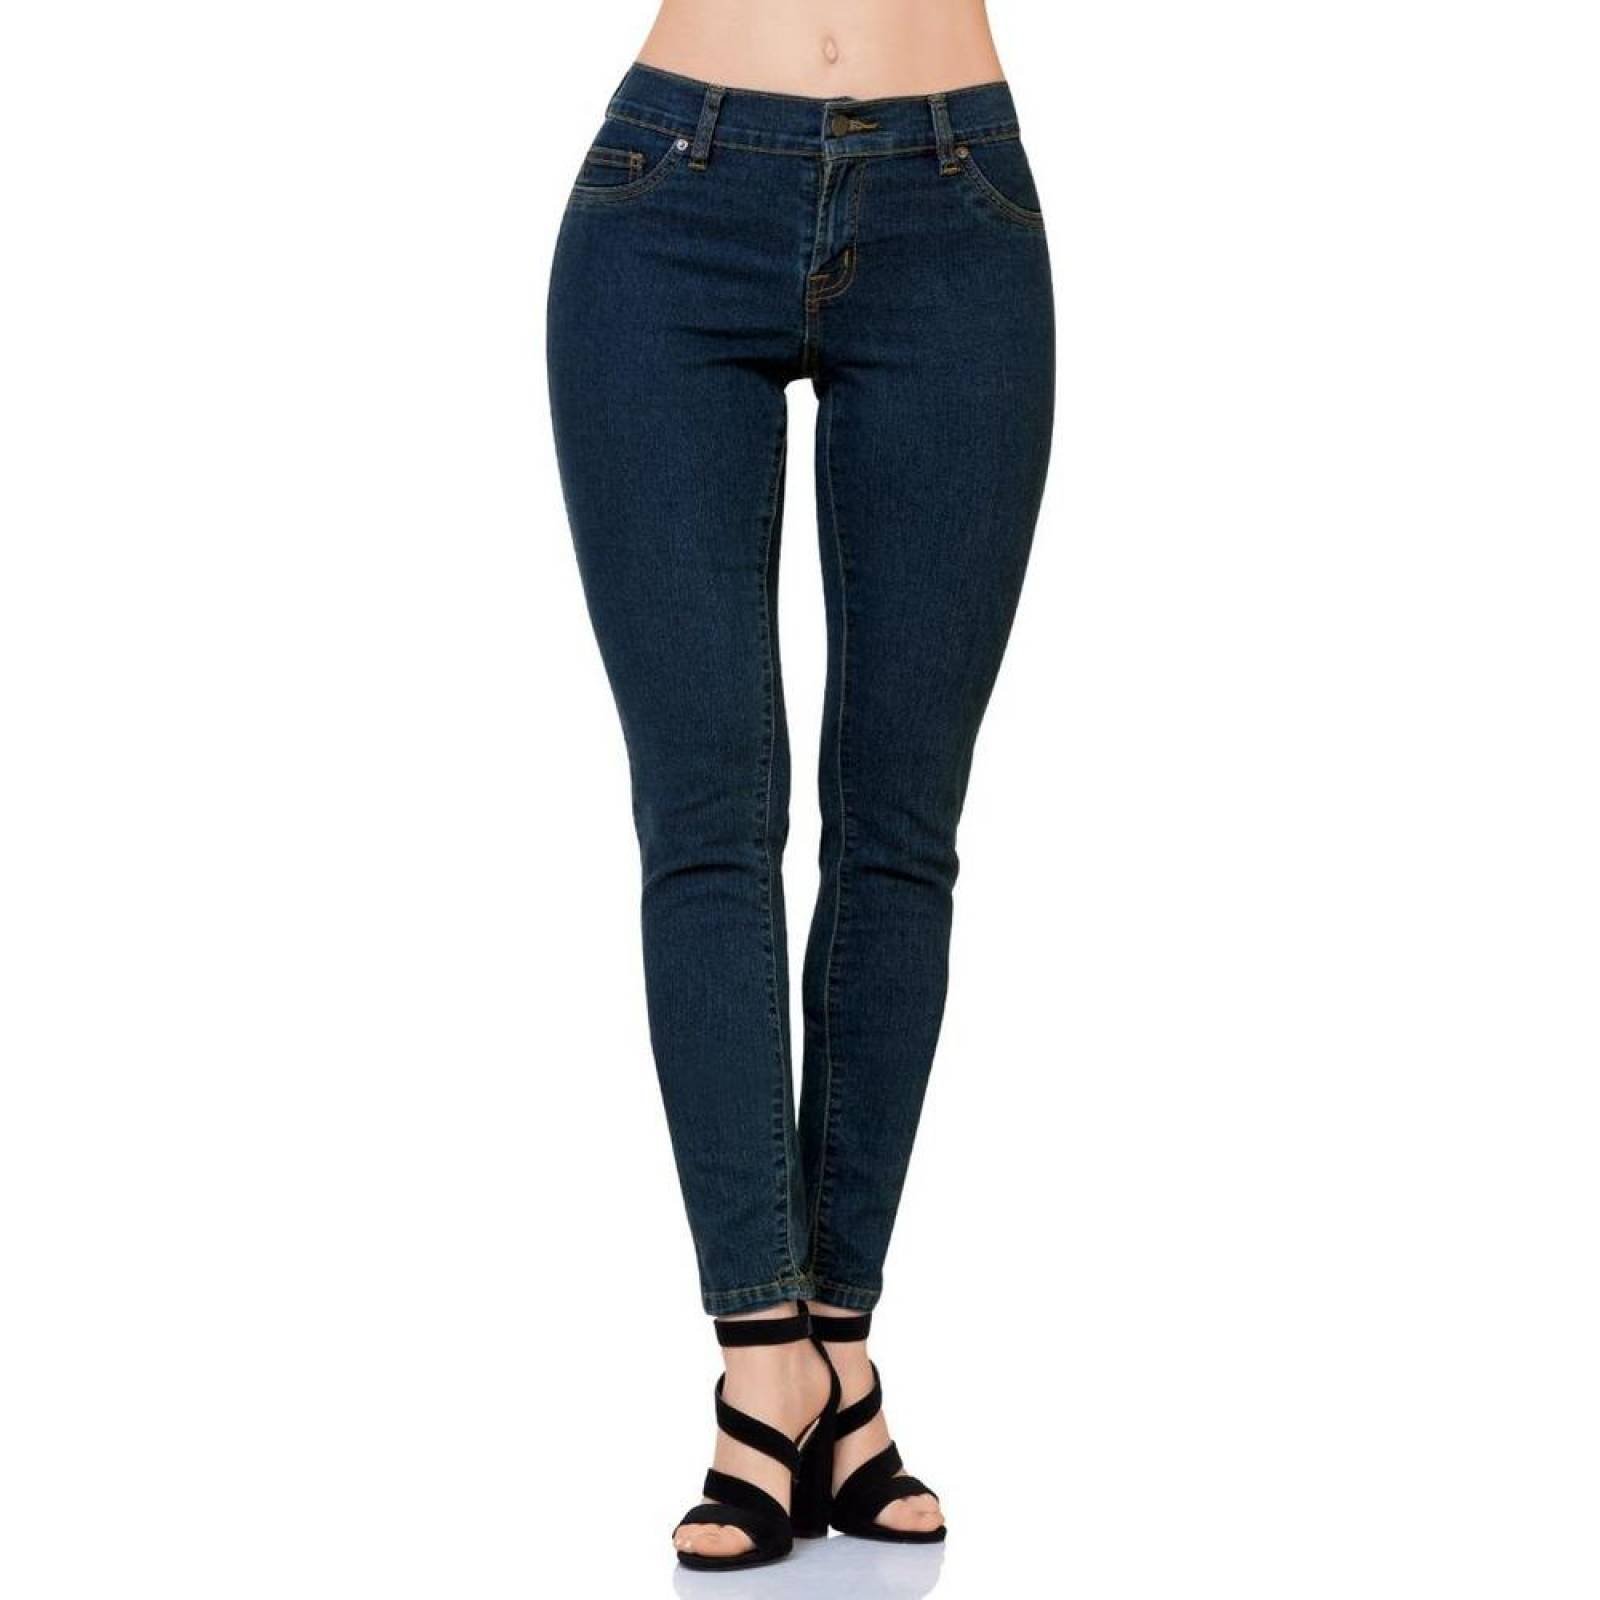 Jeans Básico Mujer SCandia Dirty 65000789 Mezclilla Stretch 